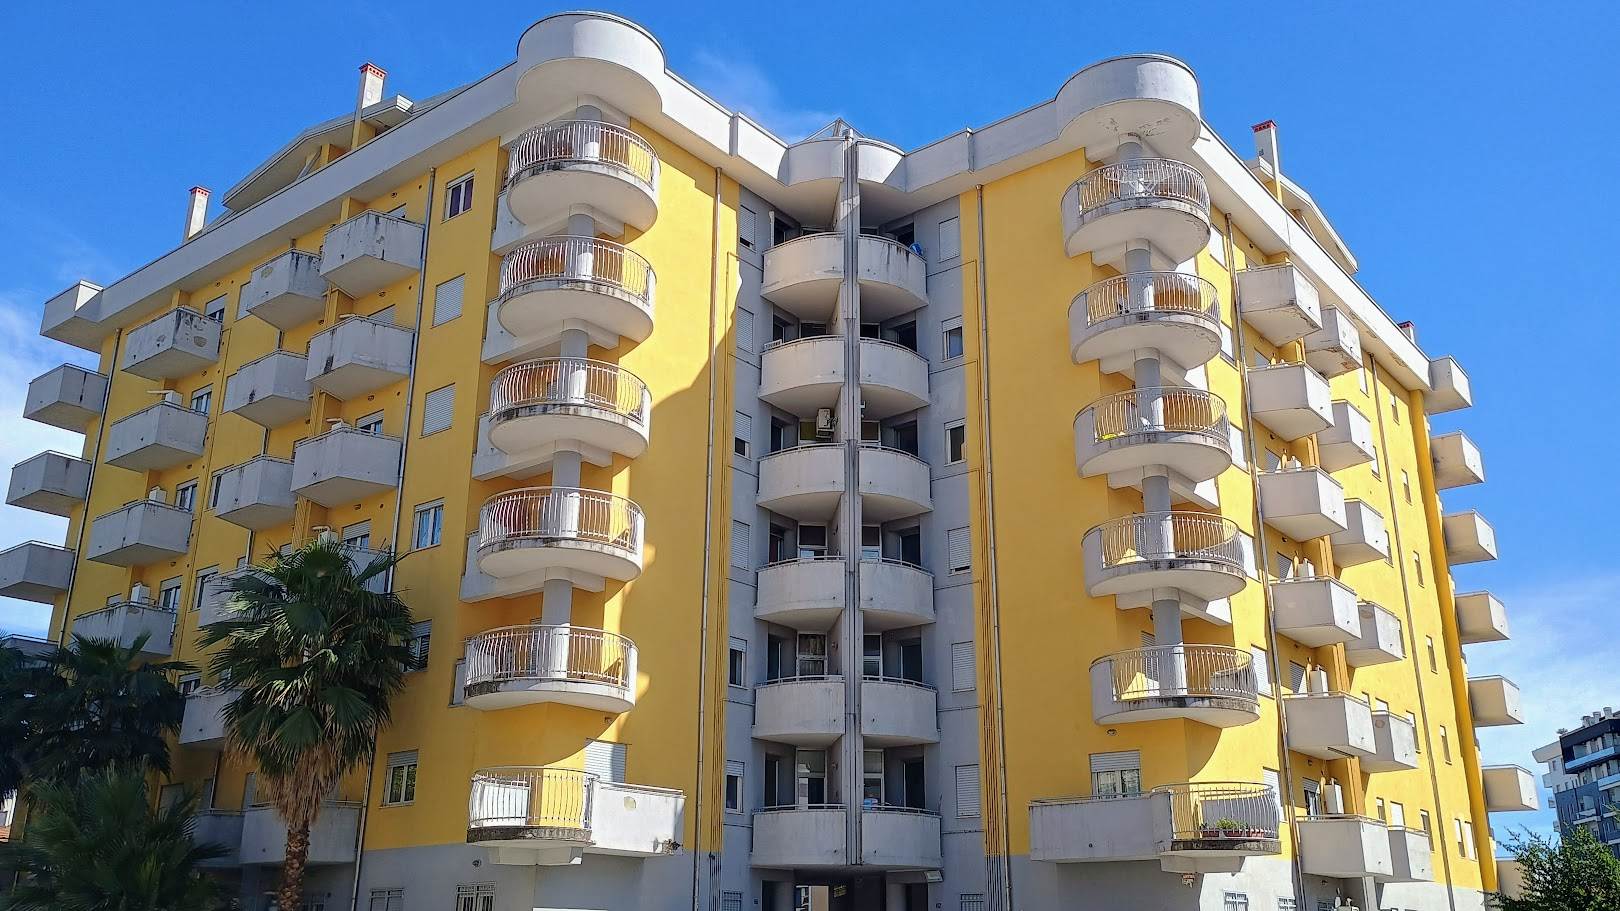 Appartamento in vendita a Rende, 4 locali, zona tromiglia, prezzo € 155.000 | PortaleAgenzieImmobiliari.it